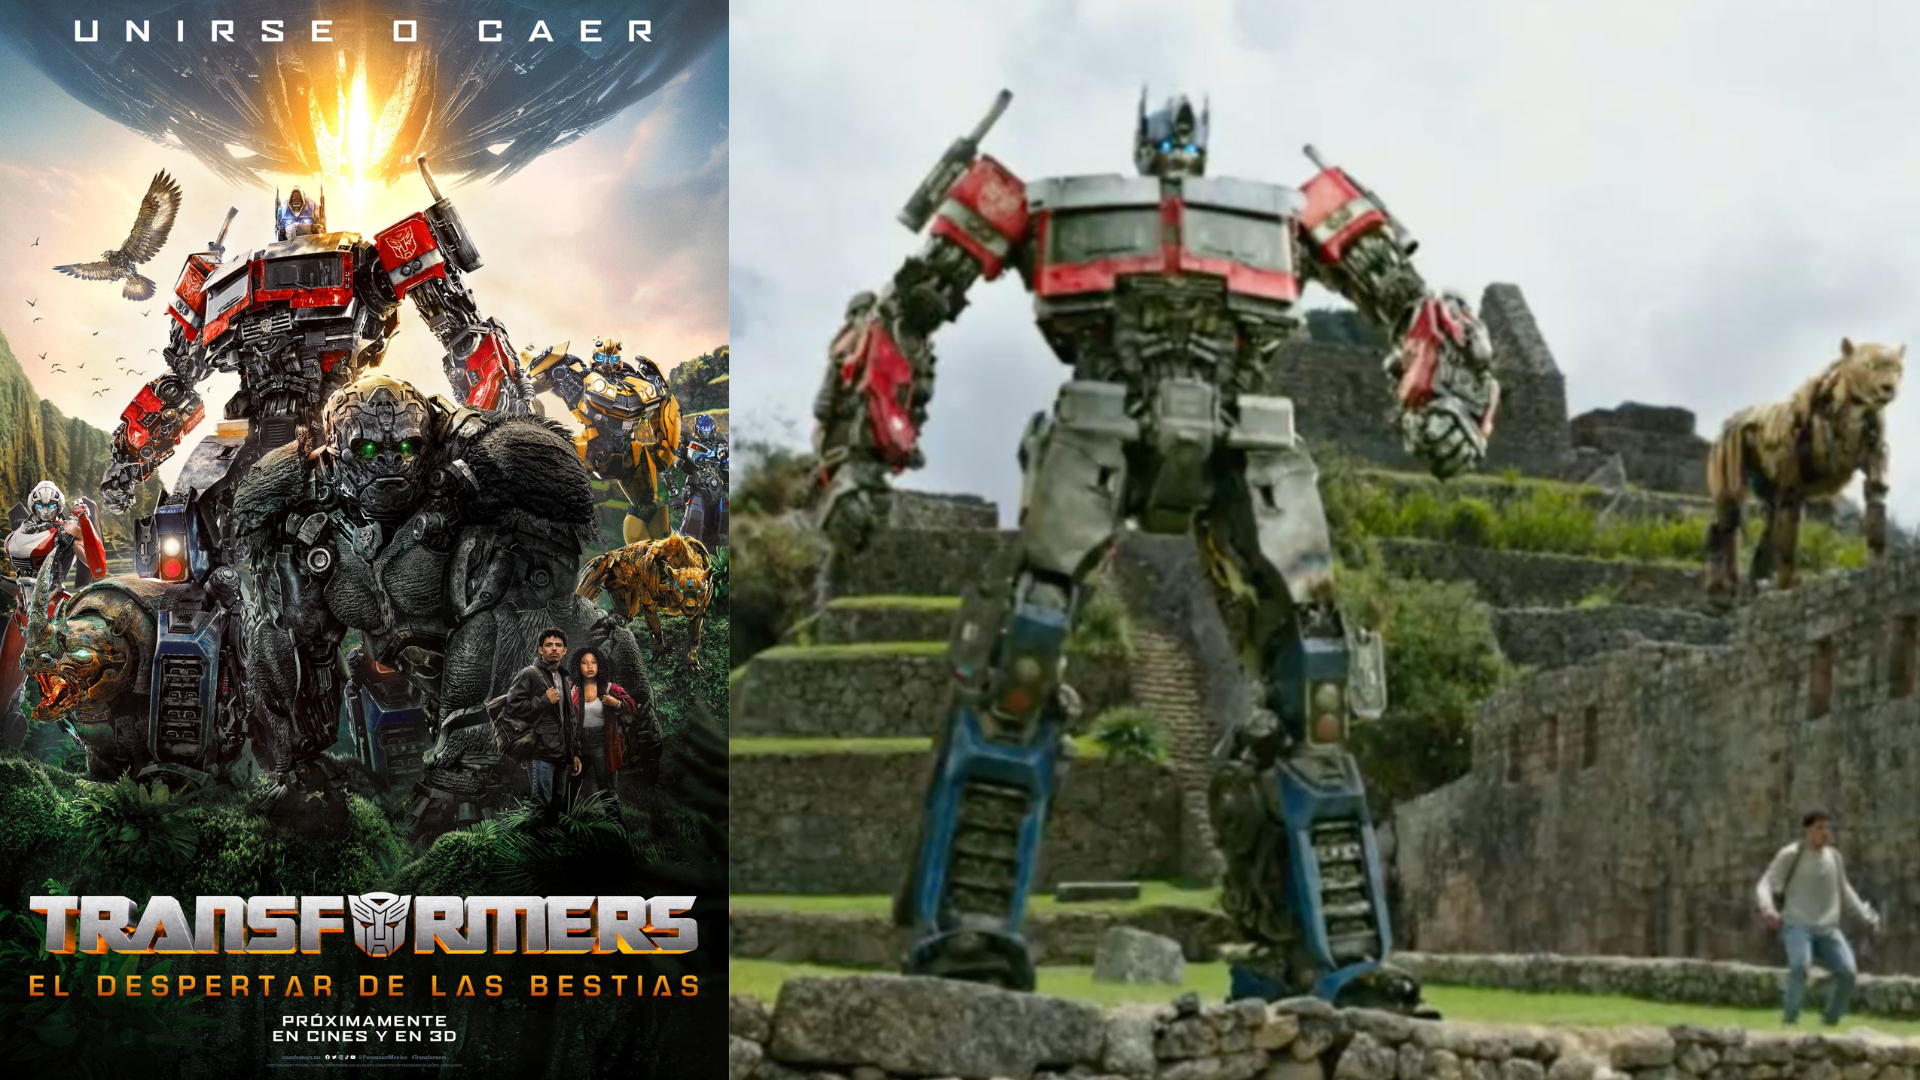 ‘Transformers: El despertar de las bestias’ aumentará inversión y abre las puertas a otras producciones, aseguró embajador de Perú en EEUU